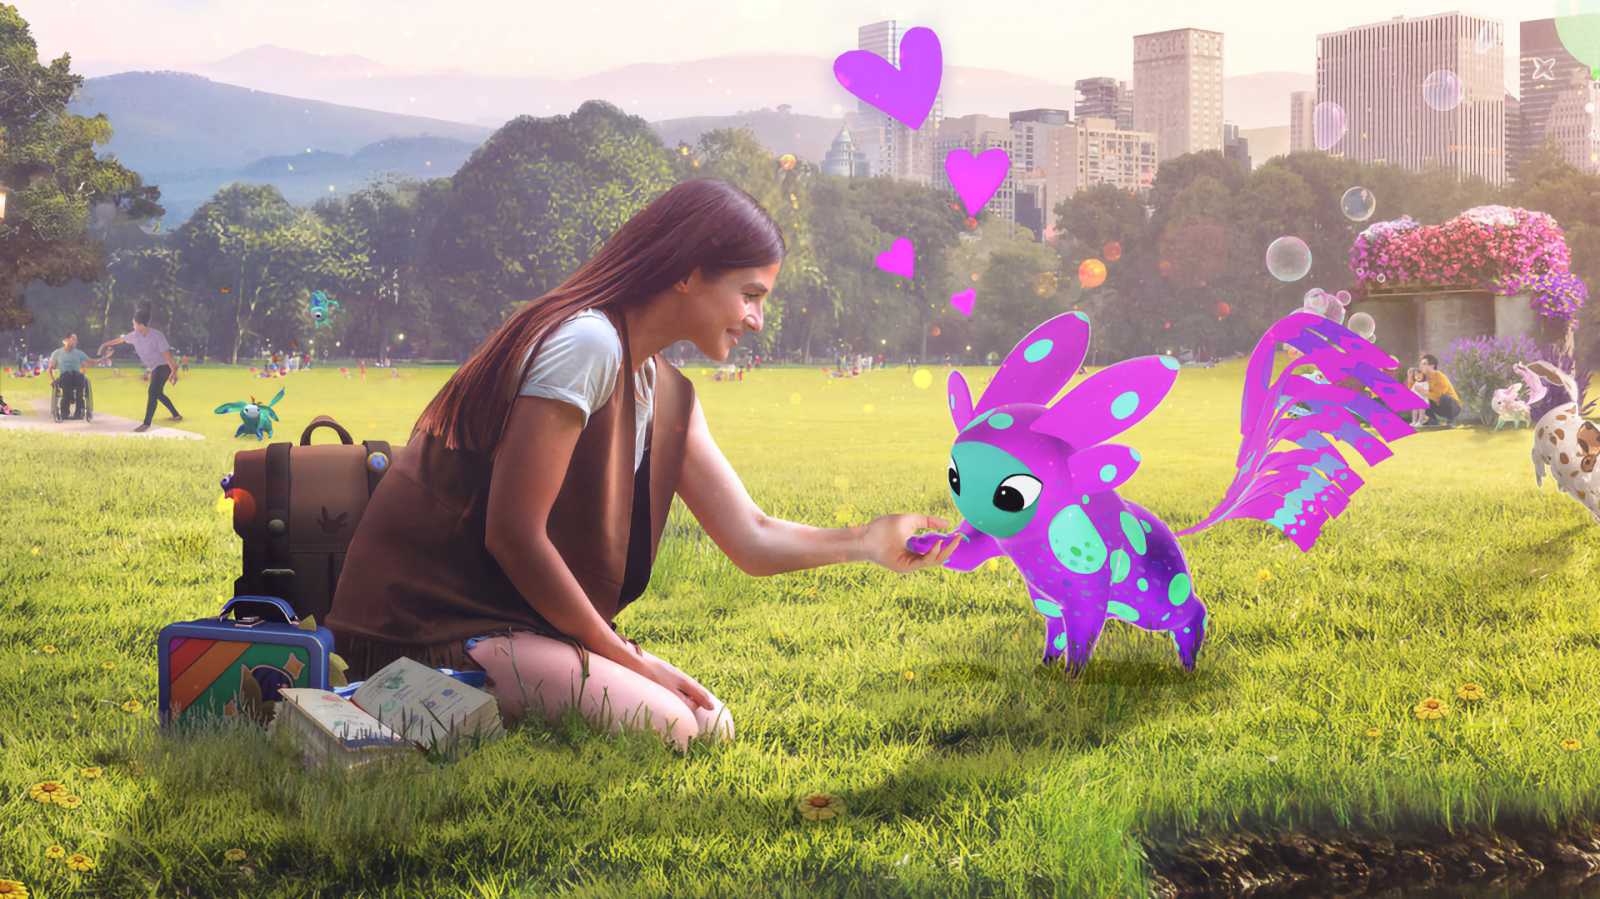 Končí éra Pokémon GO? Vývojáři z Niantic představili roztomilou novinku Peridot